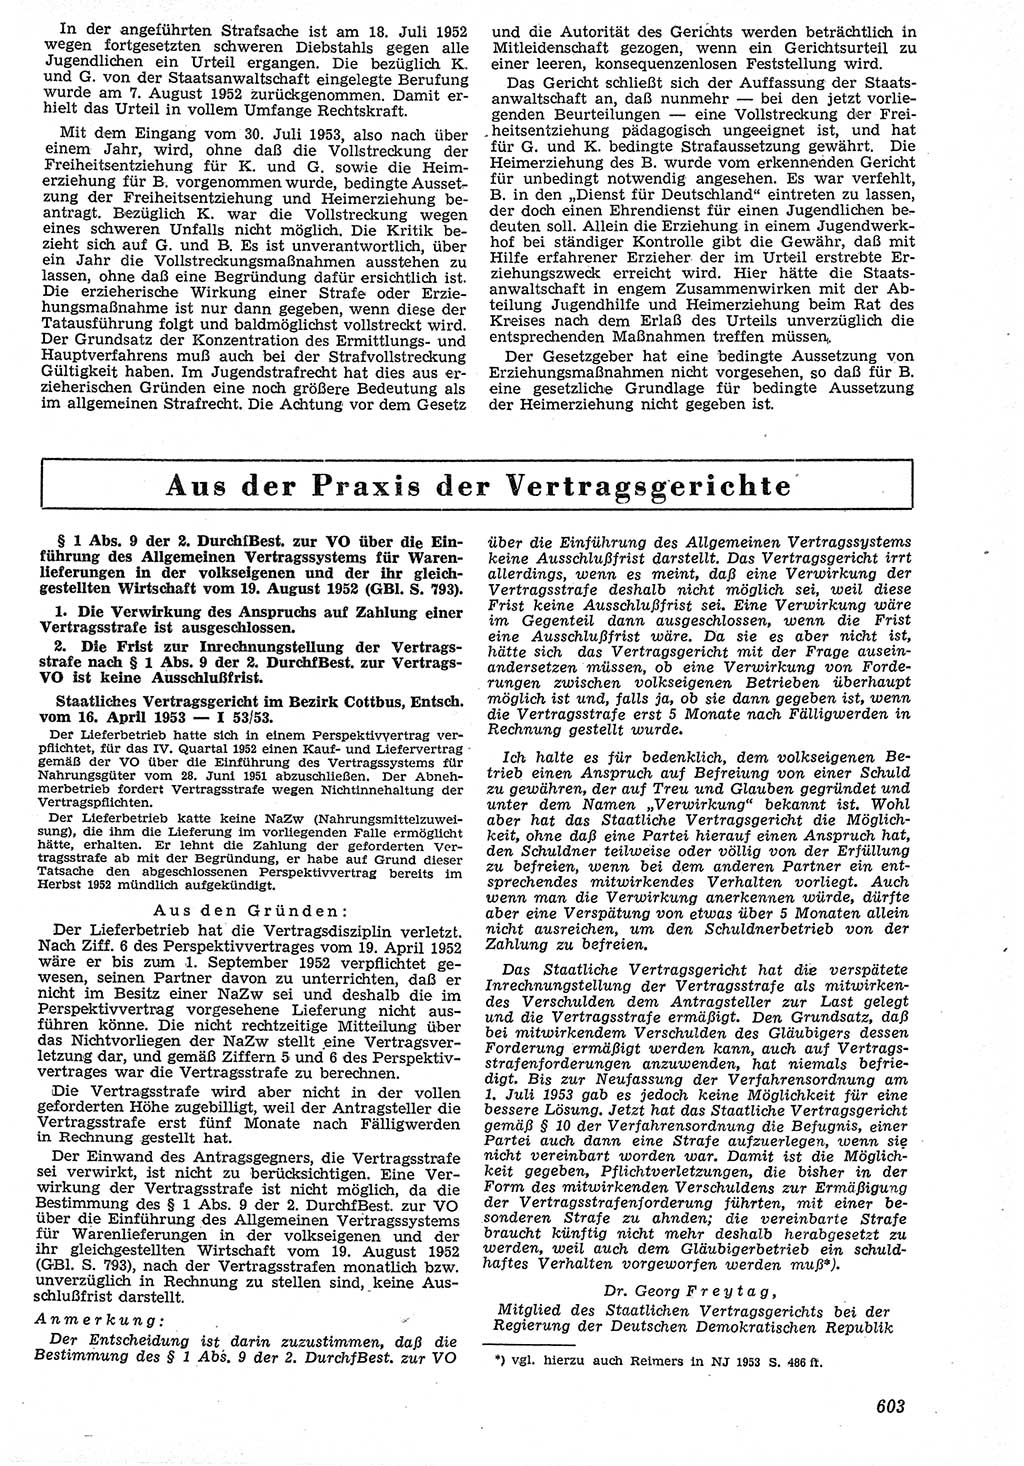 Neue Justiz (NJ), Zeitschrift für Recht und Rechtswissenschaft [Deutsche Demokratische Republik (DDR)], 7. Jahrgang 1953, Seite 603 (NJ DDR 1953, S. 603)